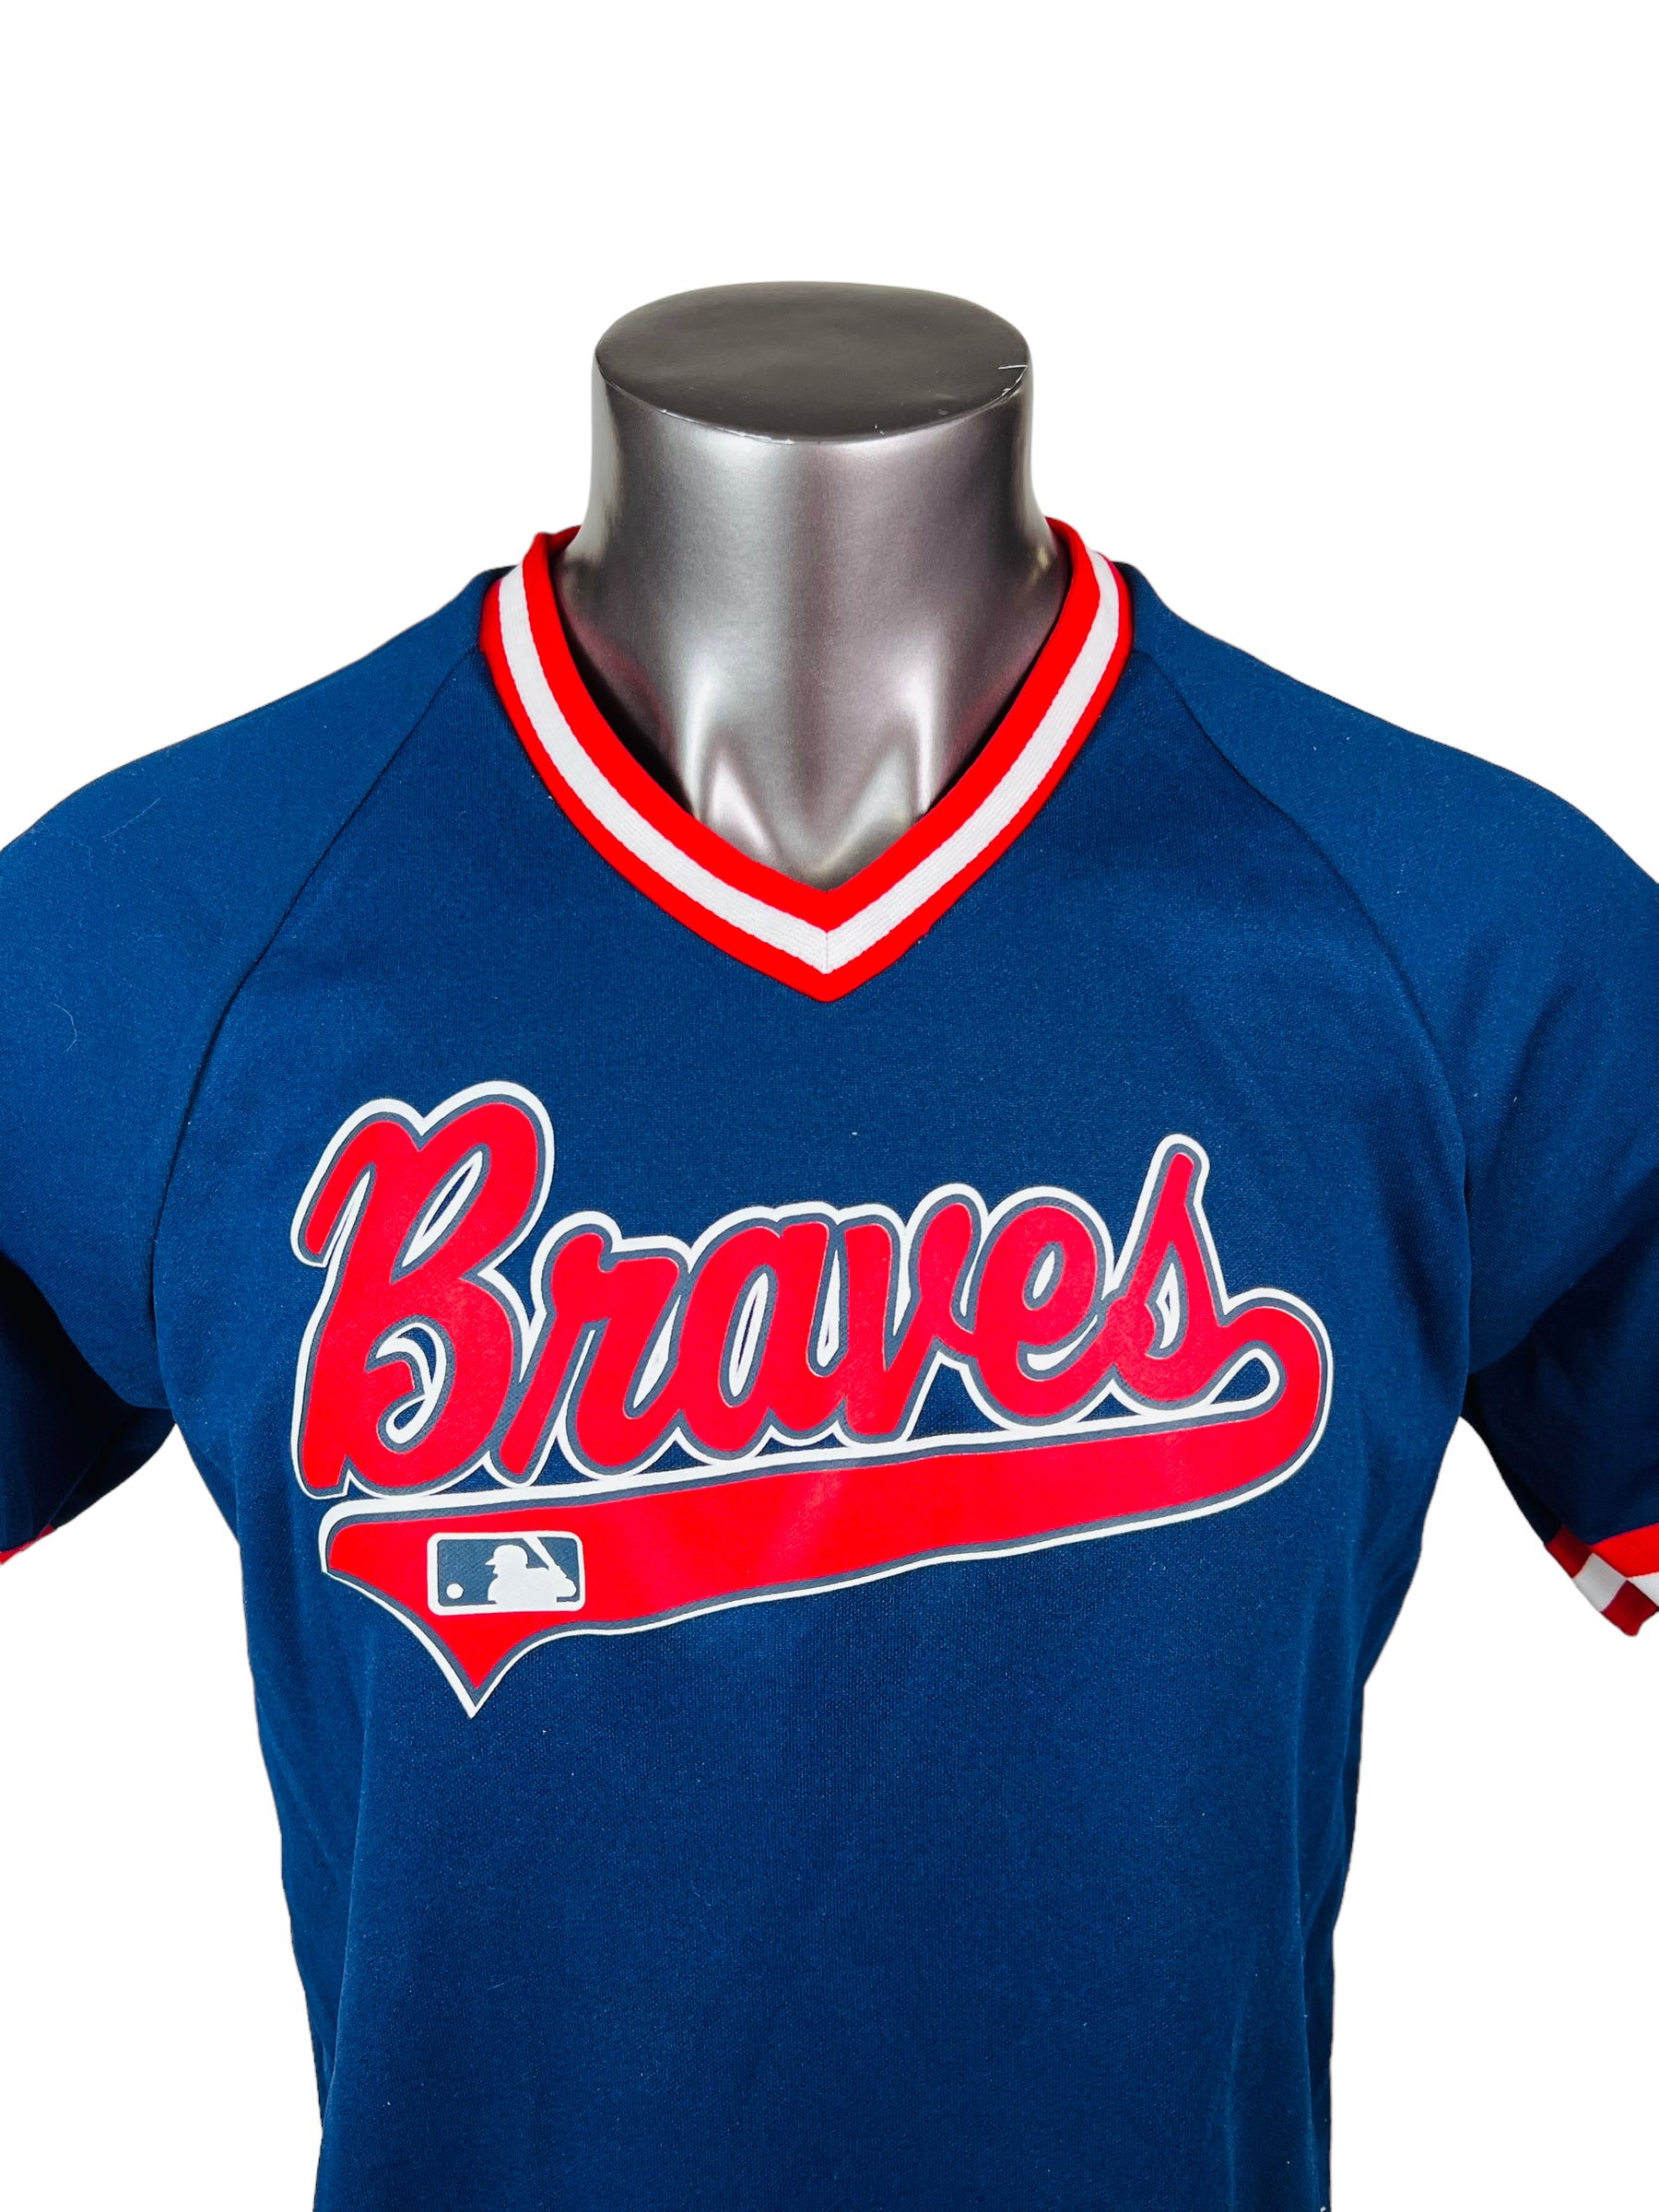 Atlanta Braves Throwback Jerseys, Vintage MLB Gear